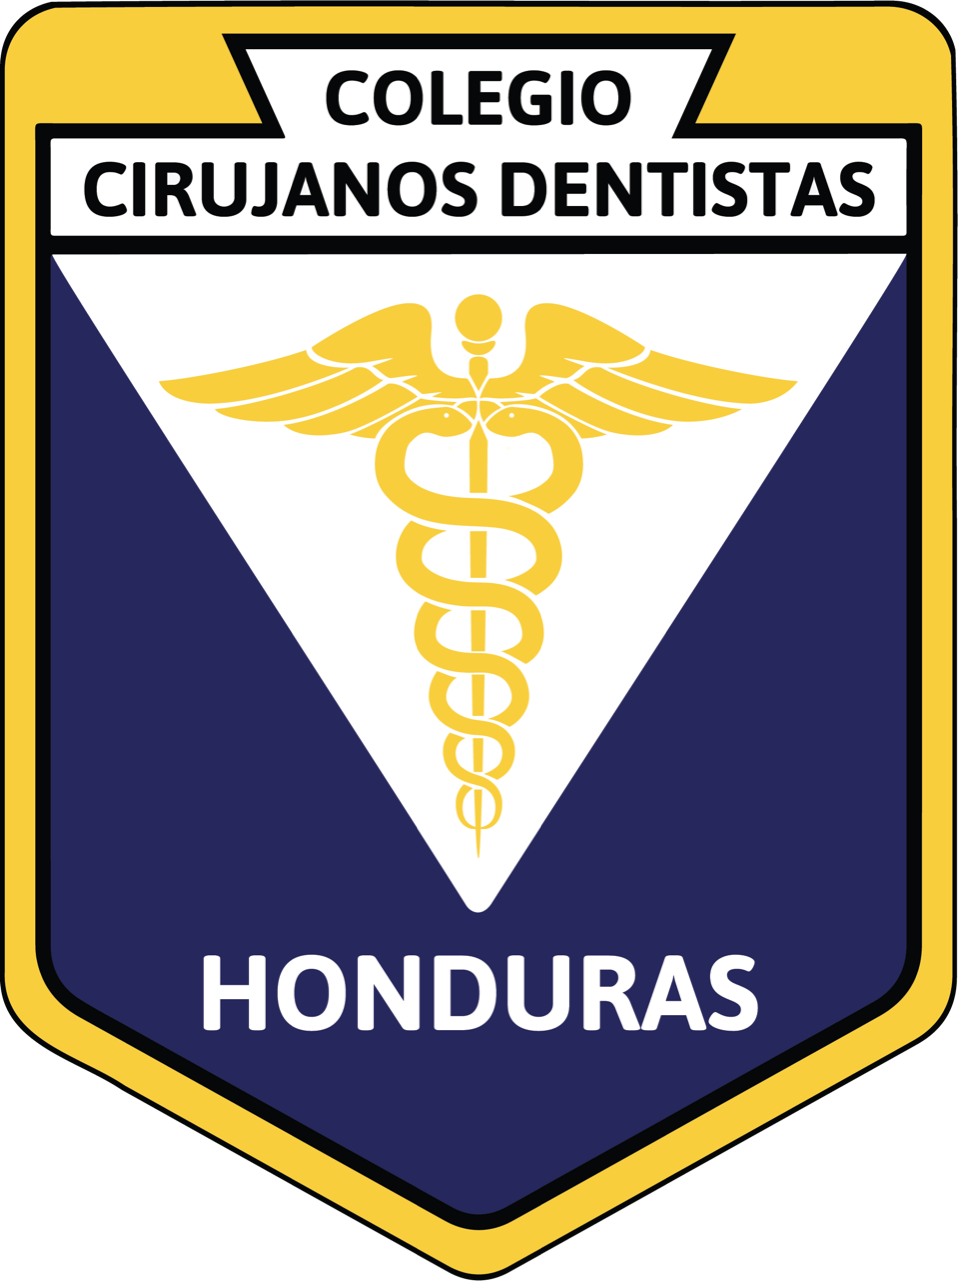 Colegio de Cirujanos Dentistas de Honduras